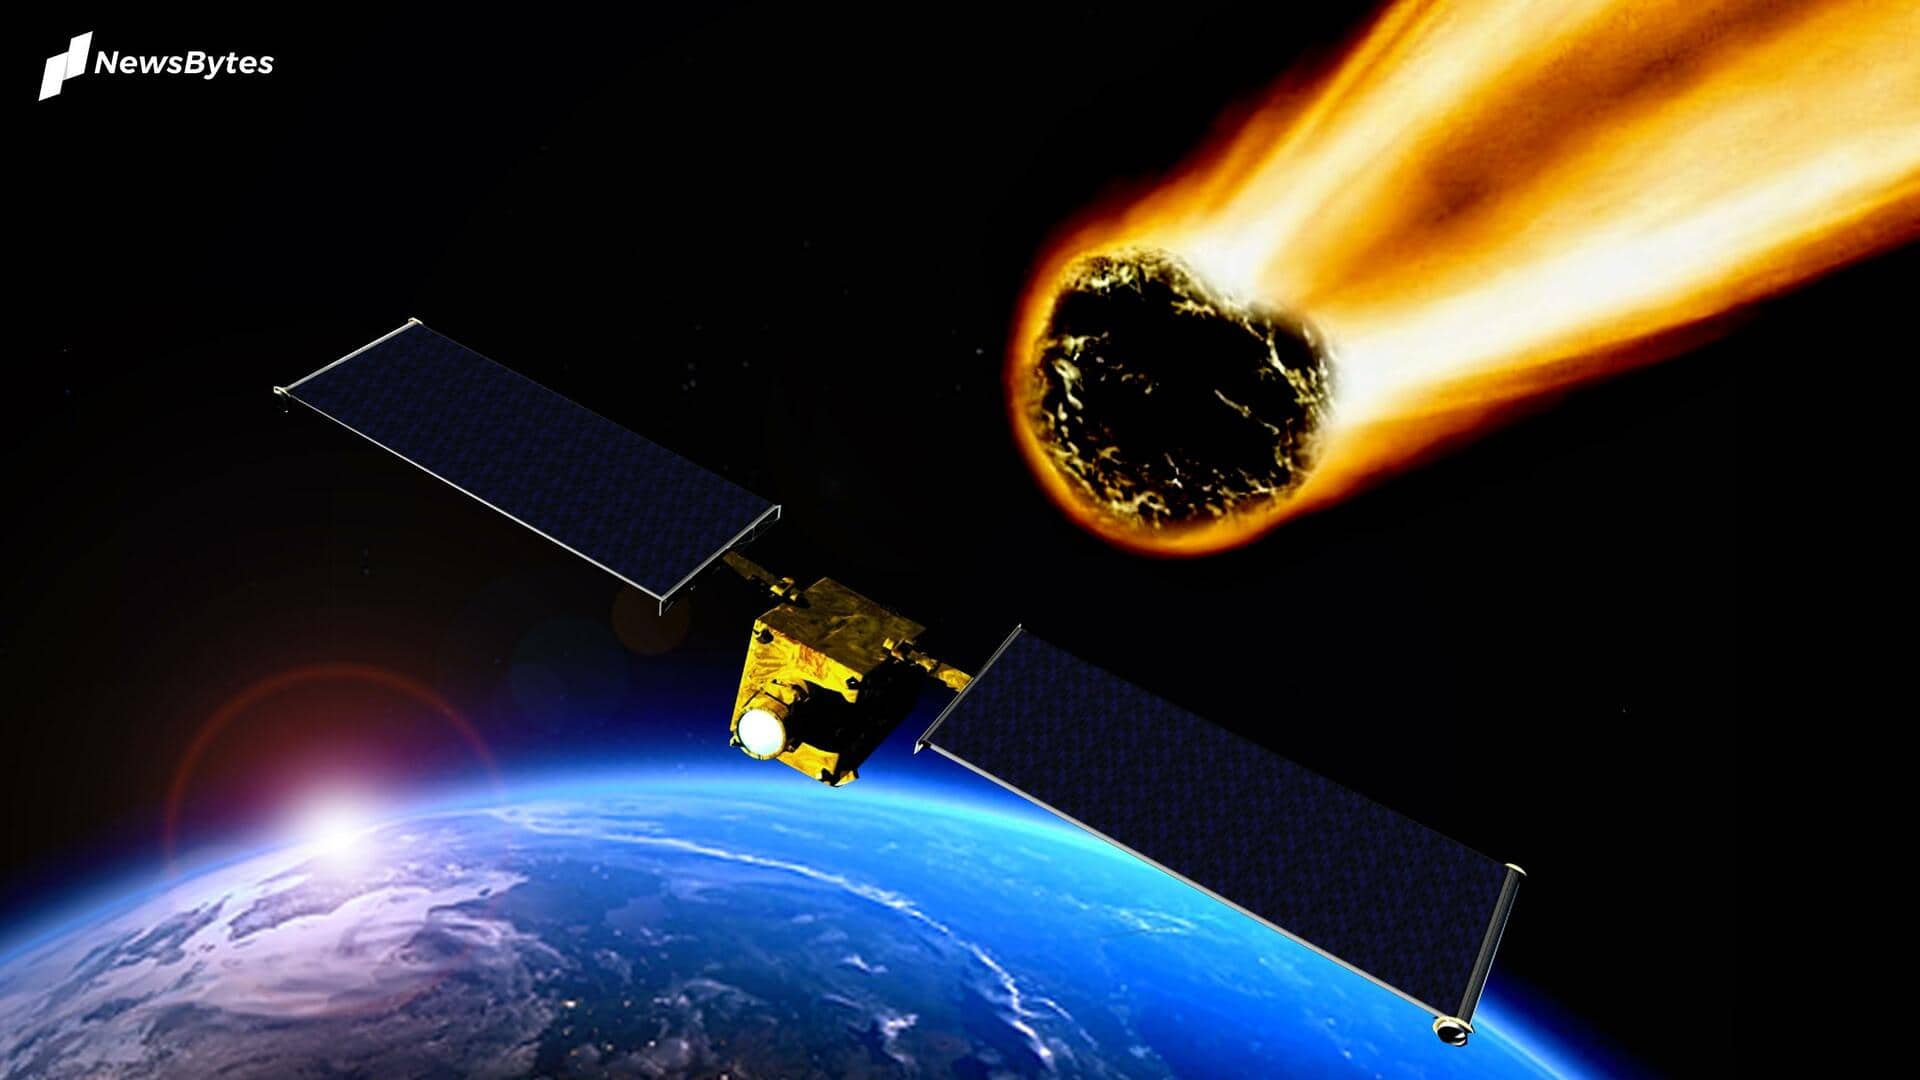 नासा ने जारी किया रेड अलर्ट, पृथ्वी की तरफ बढ़ रहा 200 फीट चौड़ा एस्ट्रोयड